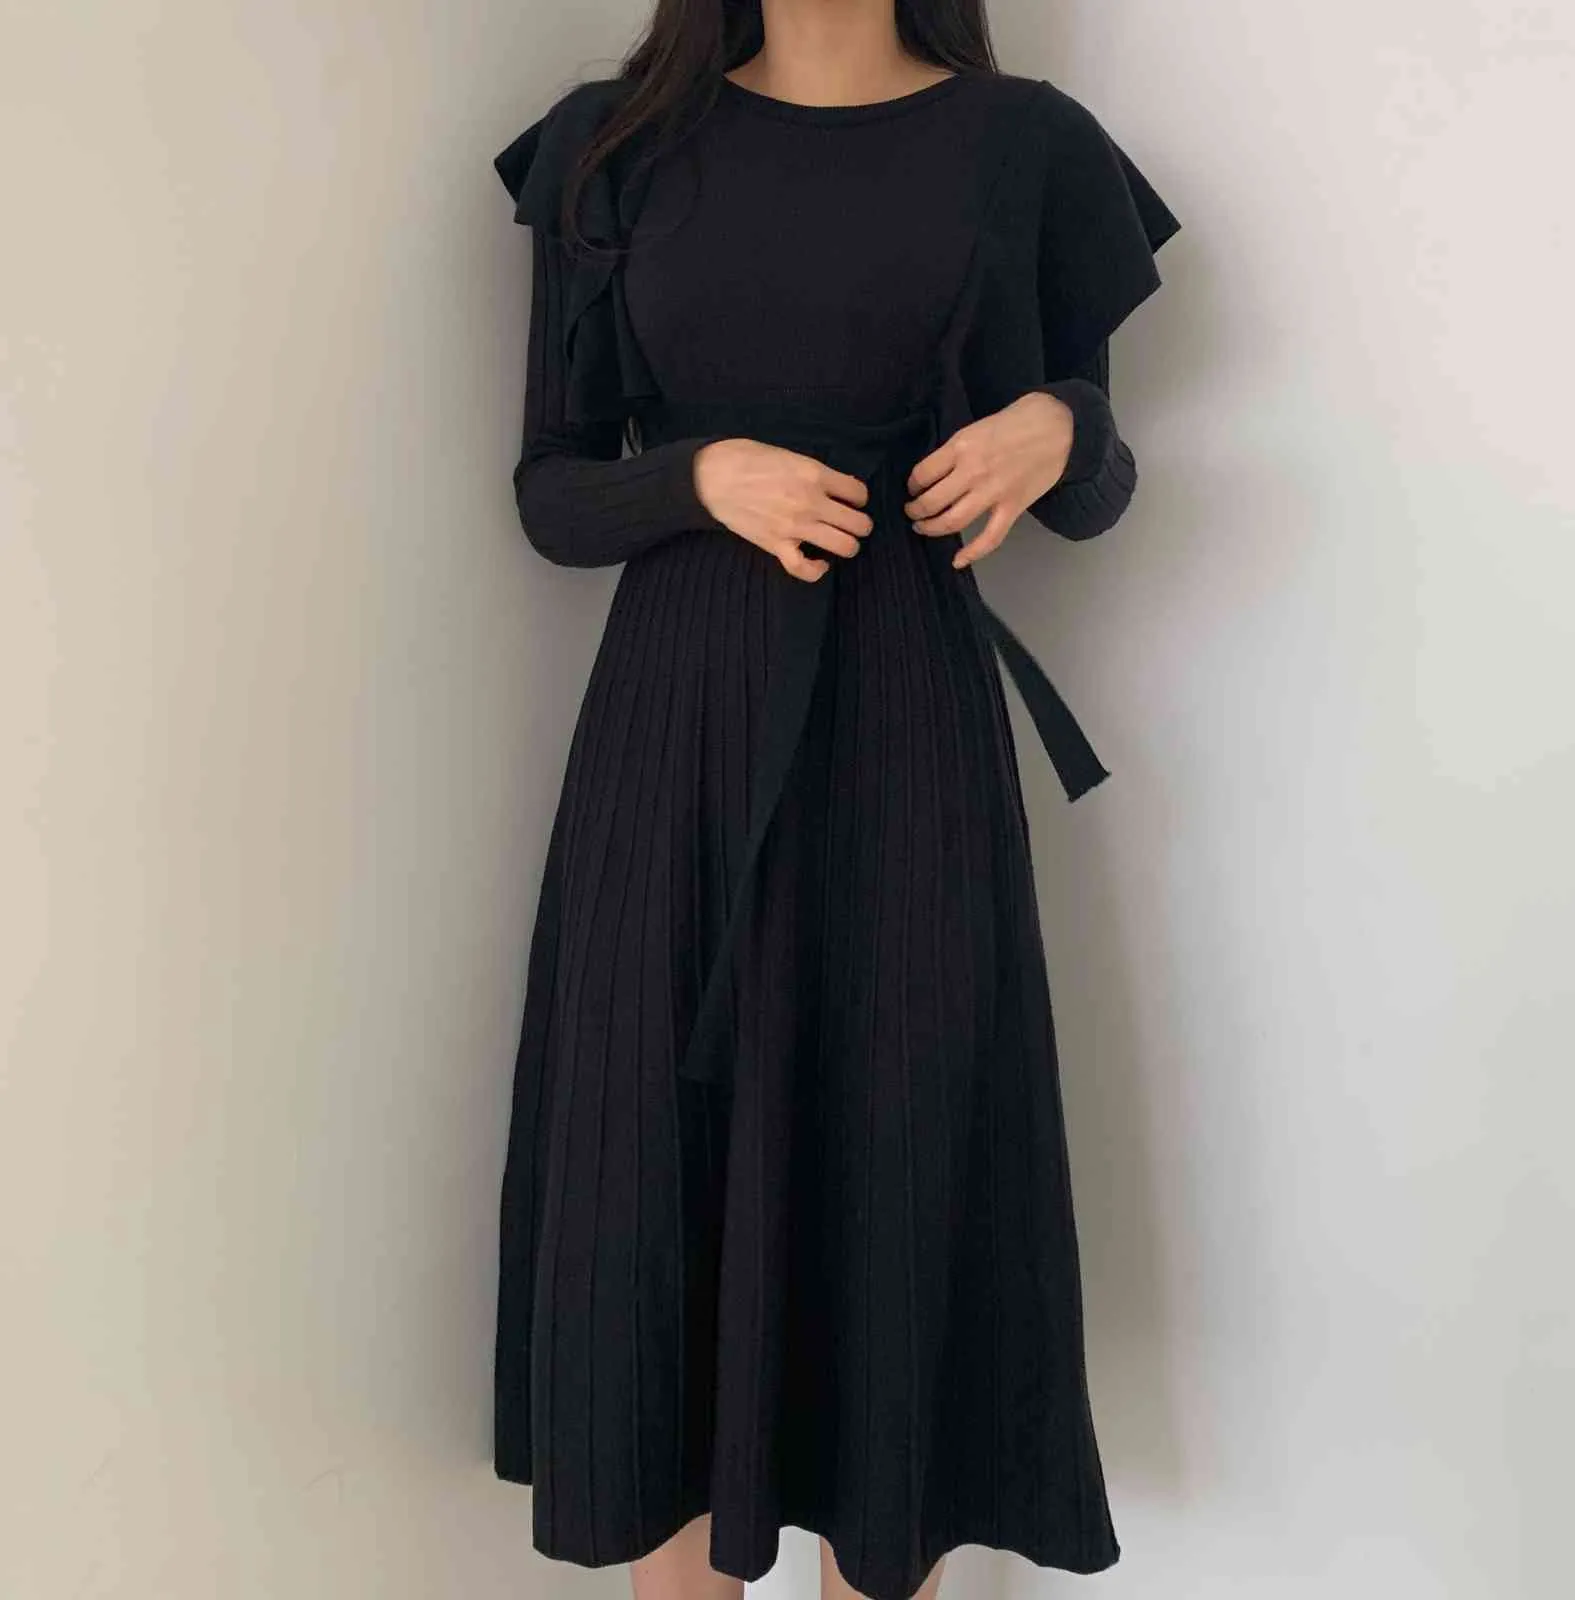 Sonbahar Kış Kadın Vintage Örme Elbise Kore Uzun Kollu Fırfır Tunik Sashes Bodycon Kazak Elbiseler Vestido Mujer 210513